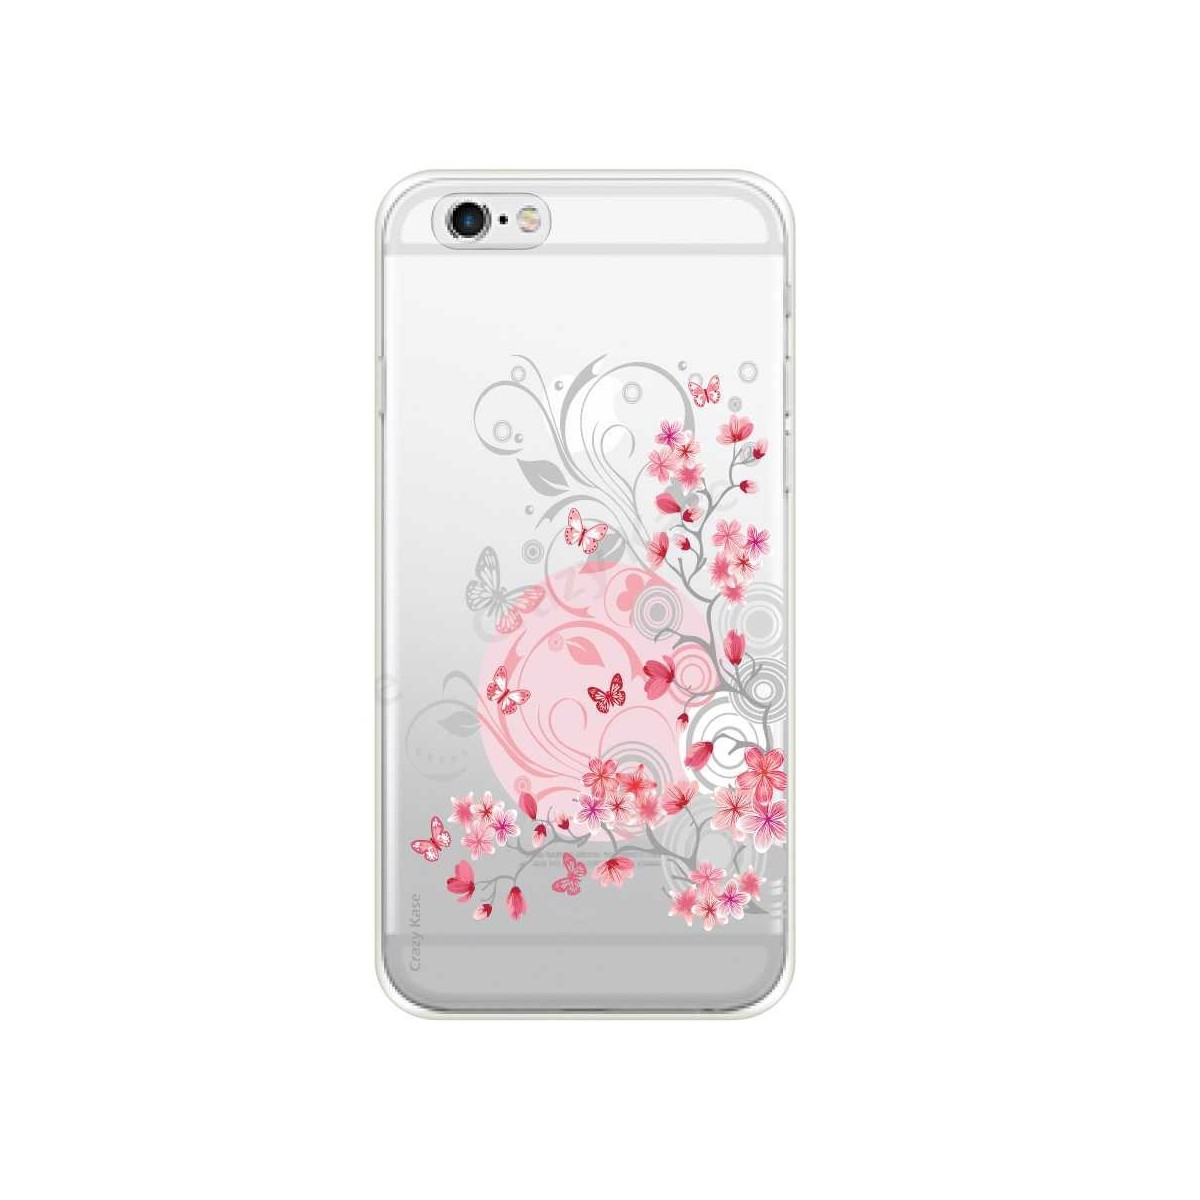 Coque iPhone 6 / 6s souple Fleurs et papillons - Crazy Kase